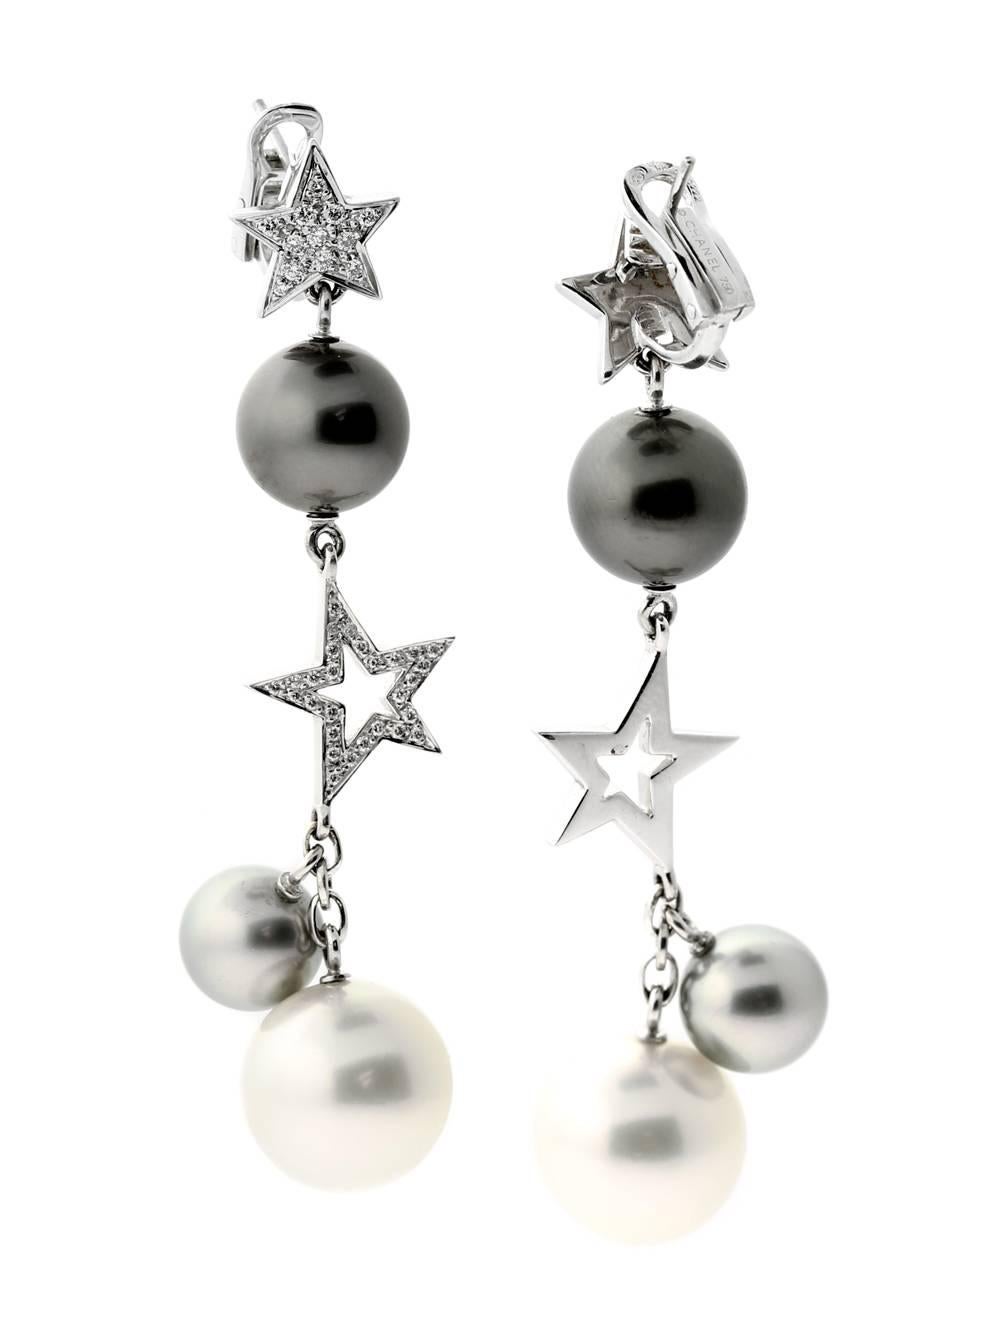 Die beliebte Comete-Kollektion von Chanel erreicht mit diesen herrlichen Perlen neue Höhen  und Diamantohrringe von 9,5 mm bis 14 mm in 18 Karat Weißgold.

Bestandsverzeichnis-ID: 0000049